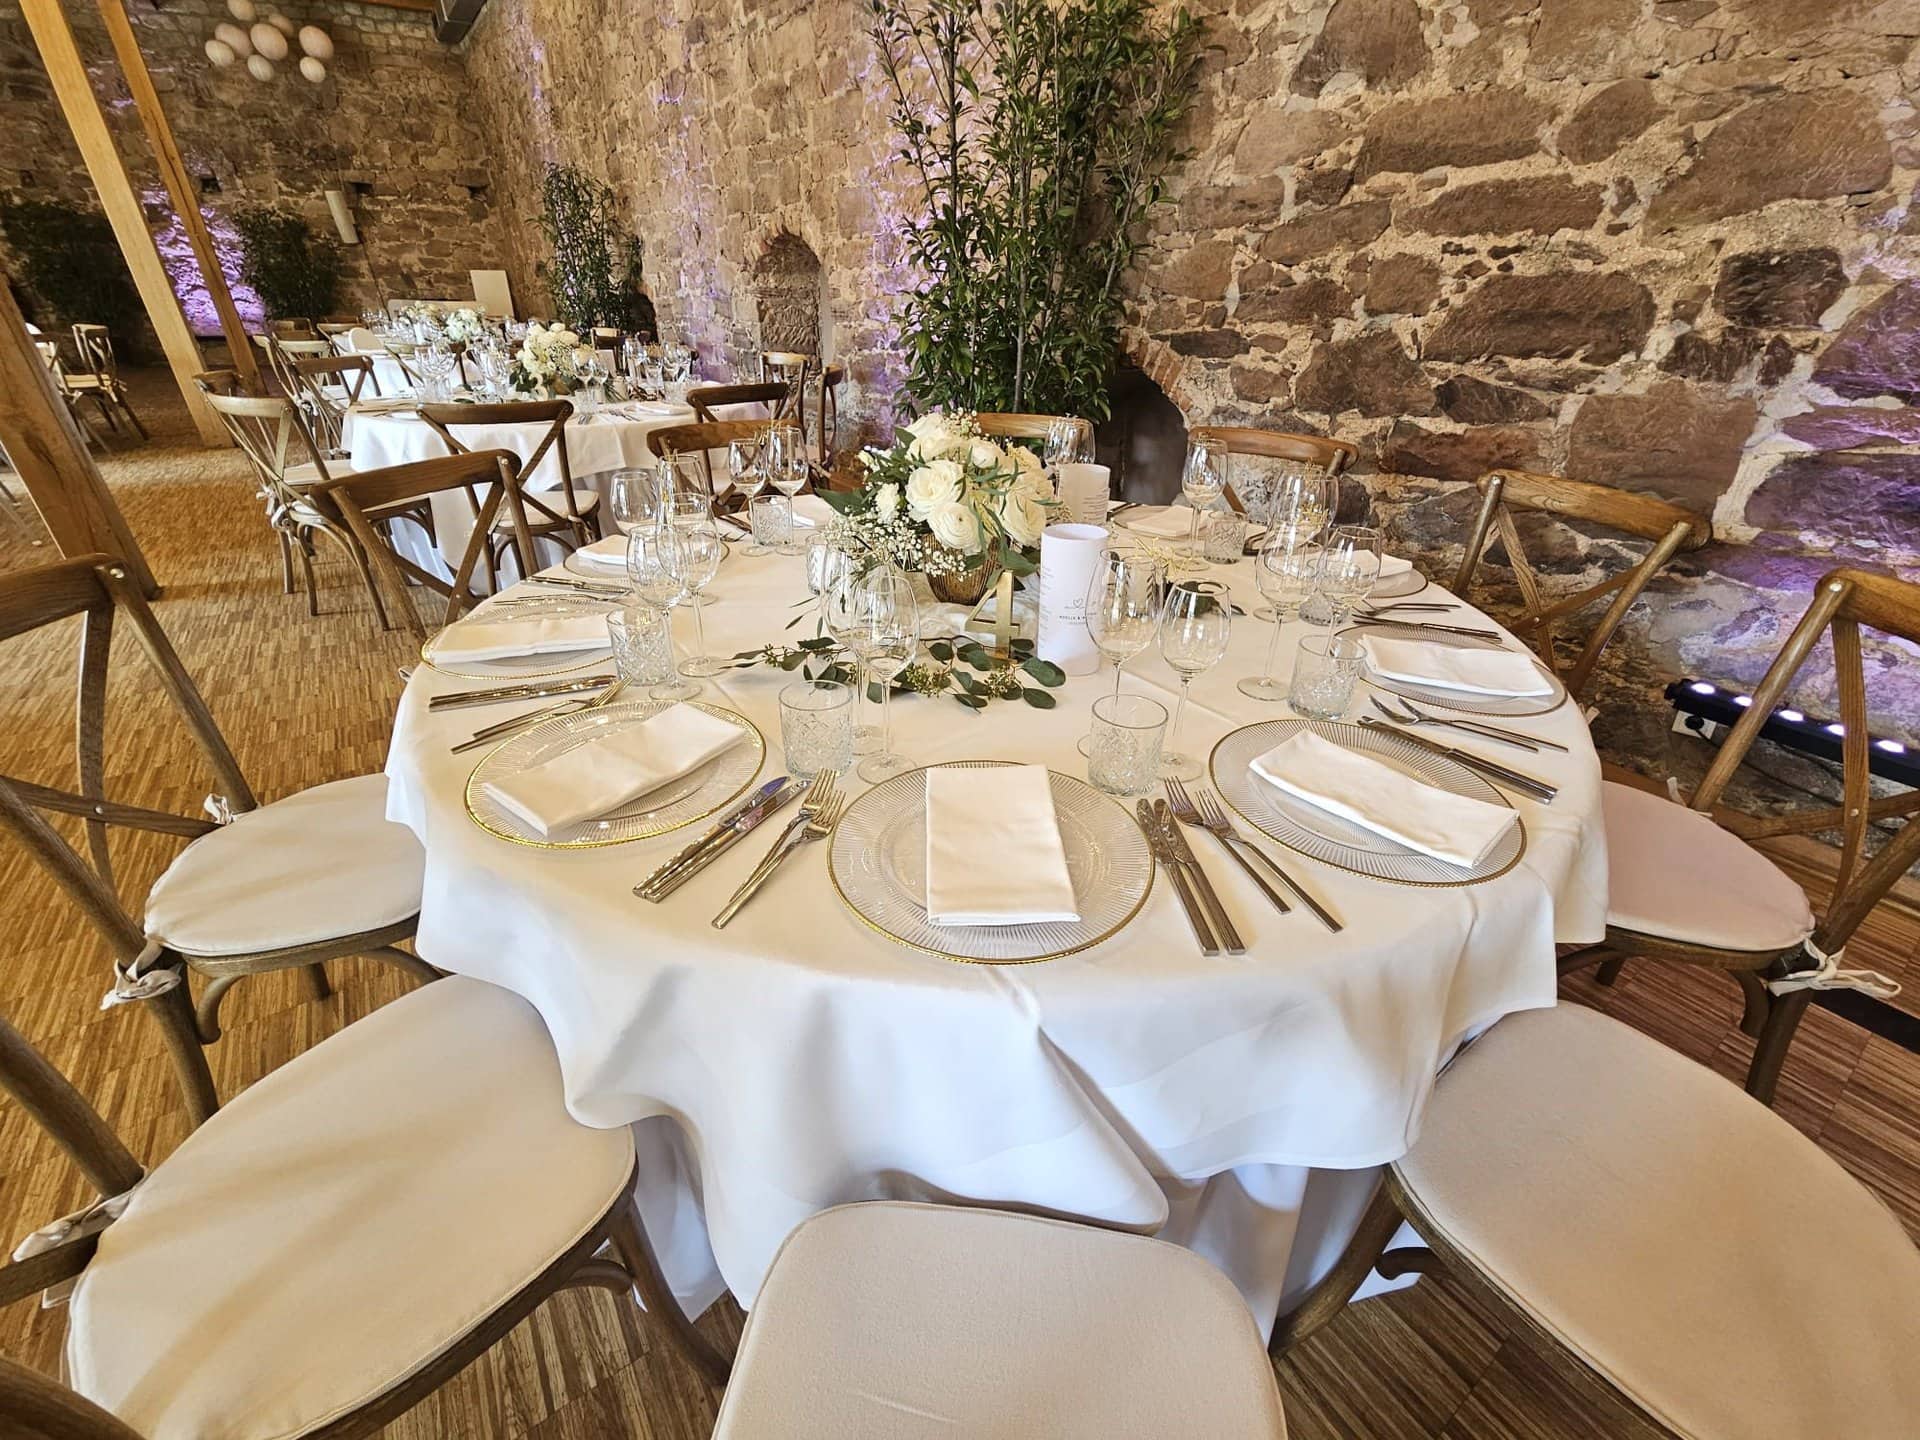 Elegantes Speisezimmer für eine Hochzeit im rustikalen Steinsaal des Landgut Schlosses, mit runden Tischen mit weißen Tischdecken, Blumenschmuck und formellem Essgeschirr.